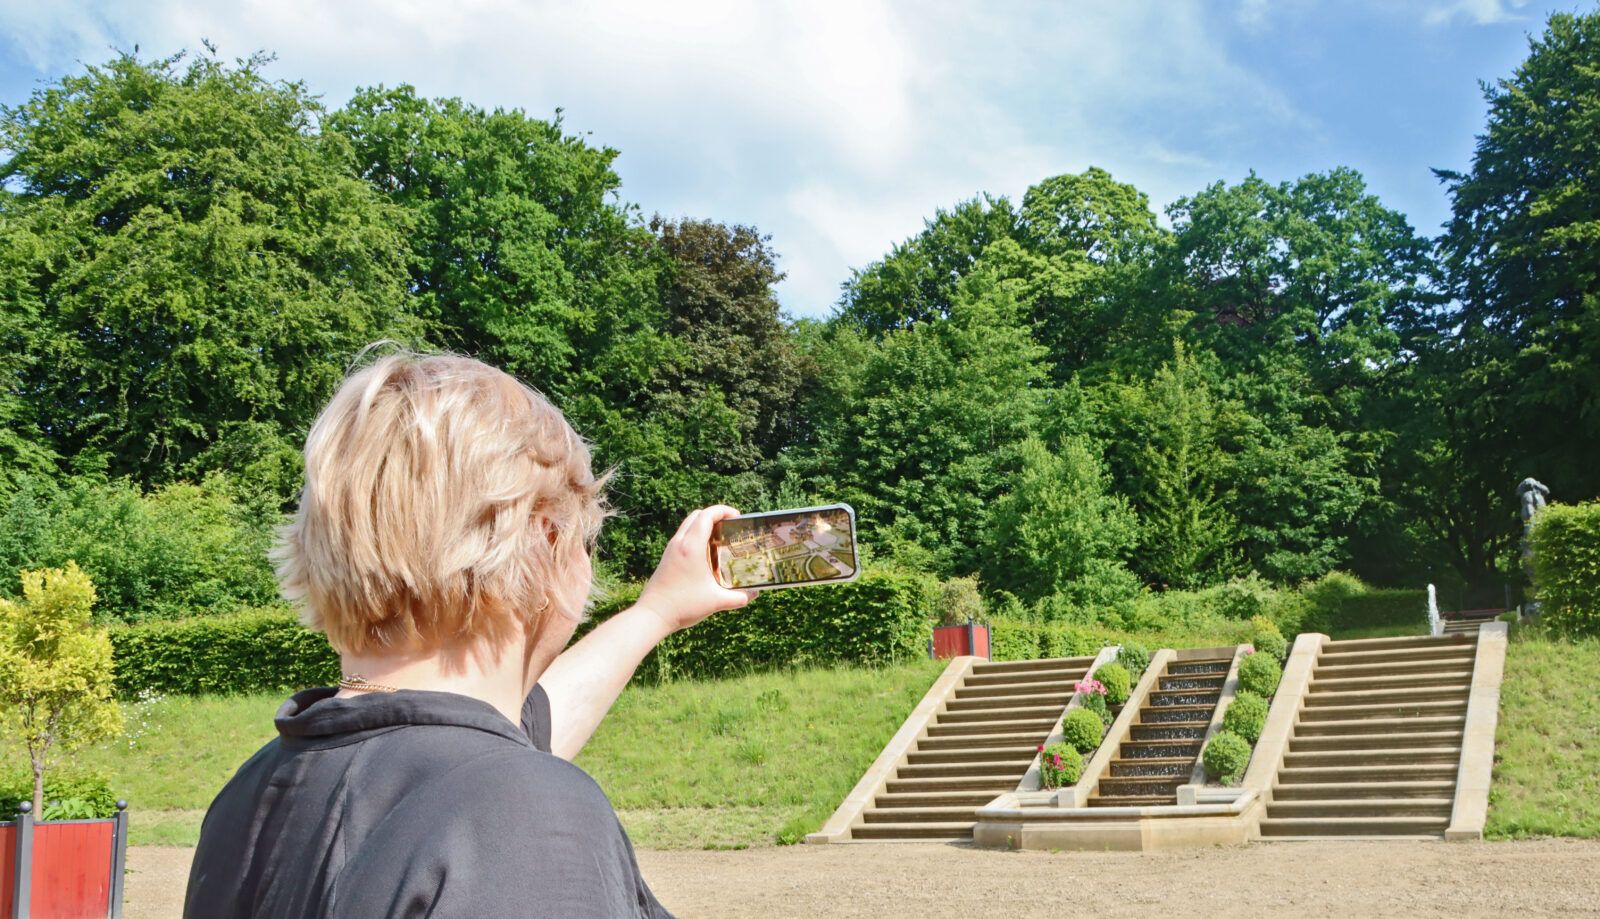 Das Bild zeigt die Anwendung einer AR-Szene im heutigen Brockgarten. Eine Person hält ein Smartphone hoch, auf dem ein animiertes 3D-Modell des historischen Barockgartens aus dem 17. Jahrhundert dargestellt ist. Foto: Stiftung Schleswig-Holsteinische Landesmuseen Schloss Gottorf, CC BY 4.0